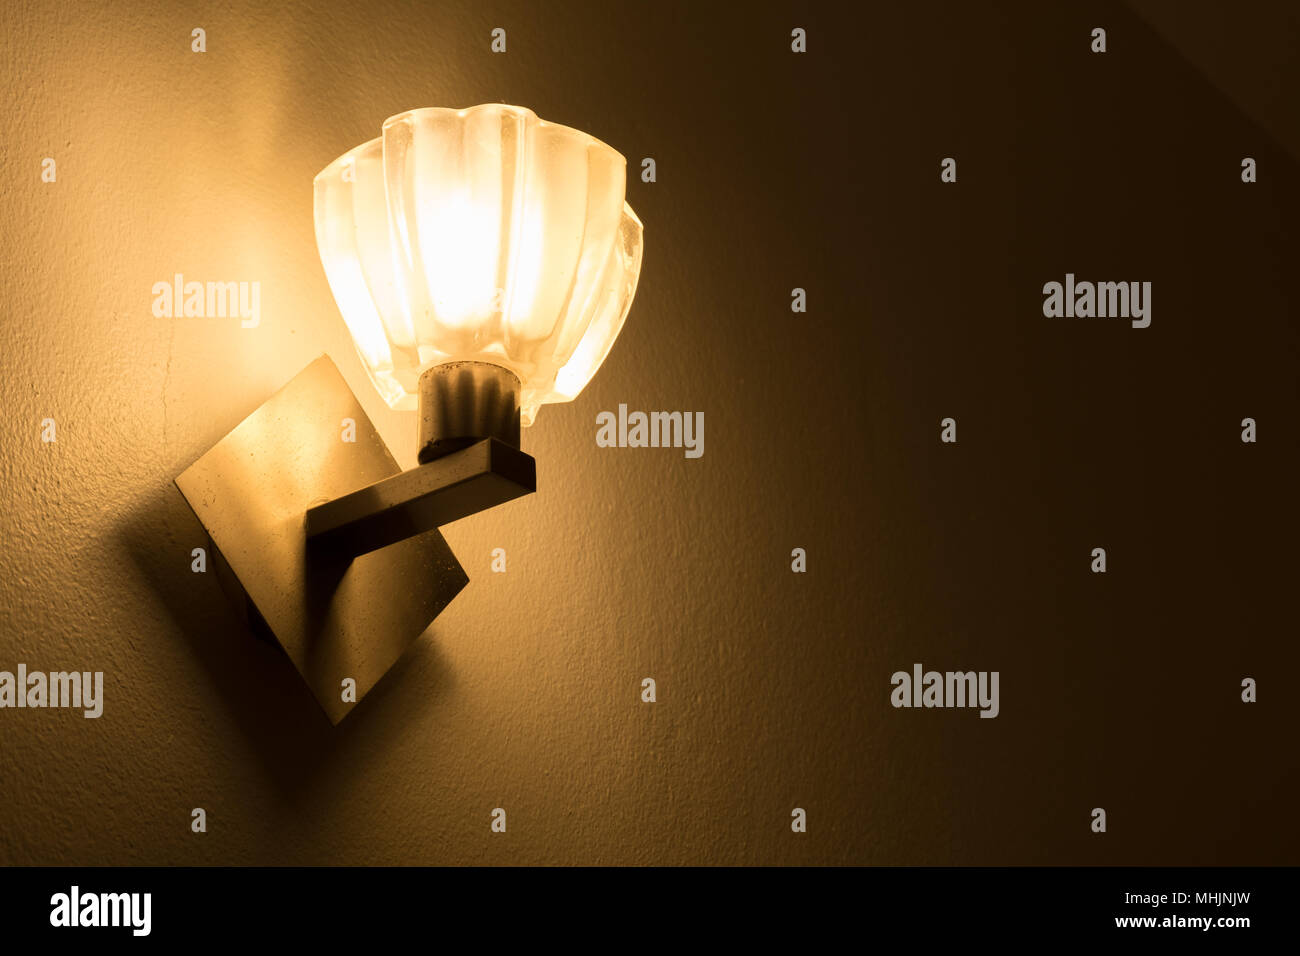 Lampada gialla illuminata, muro di cemento con lo sfondo delle lampadine. Foto Stock